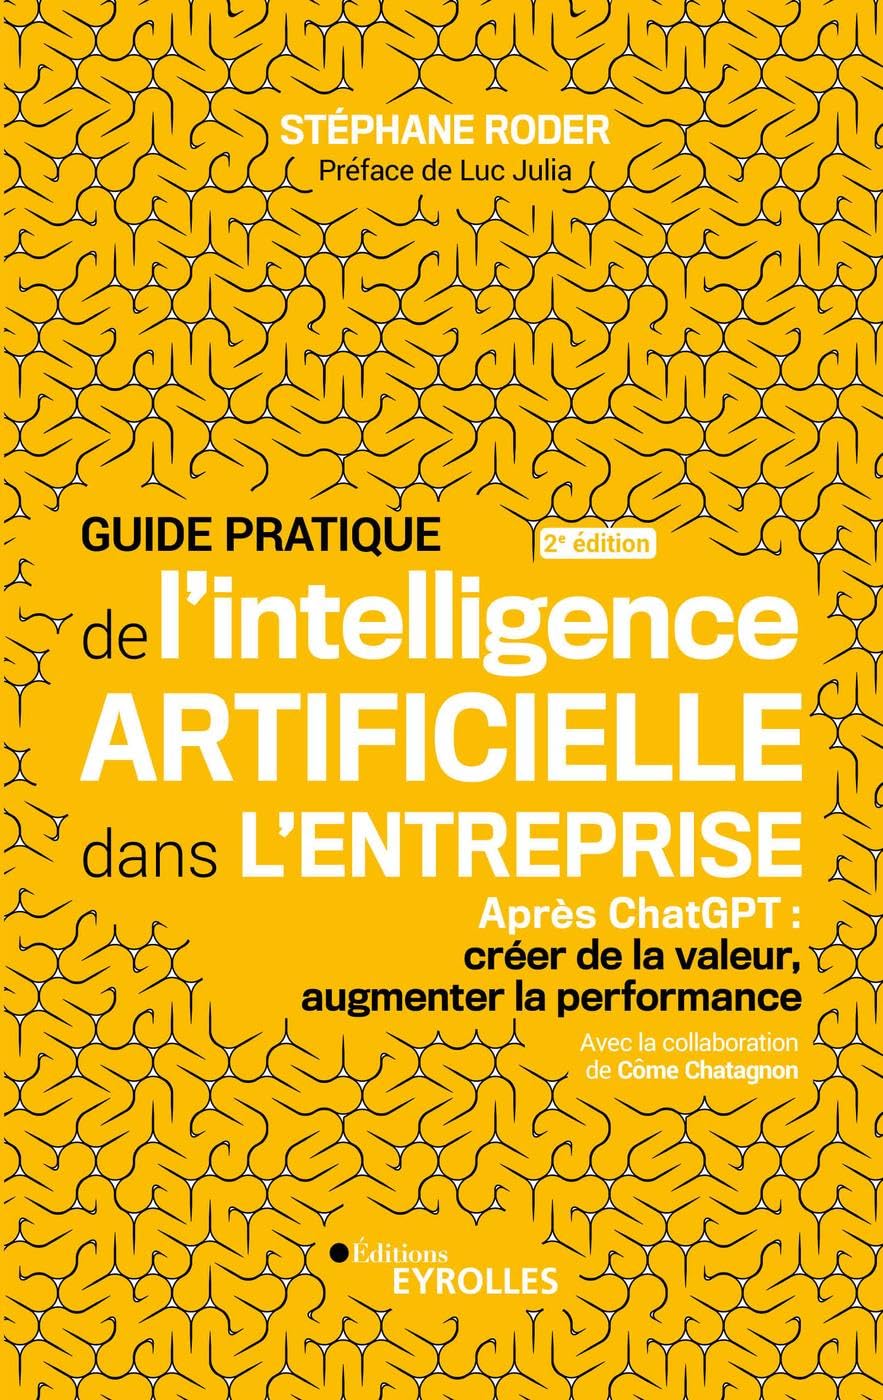 guide-pratique-de-l-intelligence-artificielle-en-entreprise-2e-edition-chatgpt-creer-de-la-valeur-augmenter-la-performance-stephane-roder-avis-prix